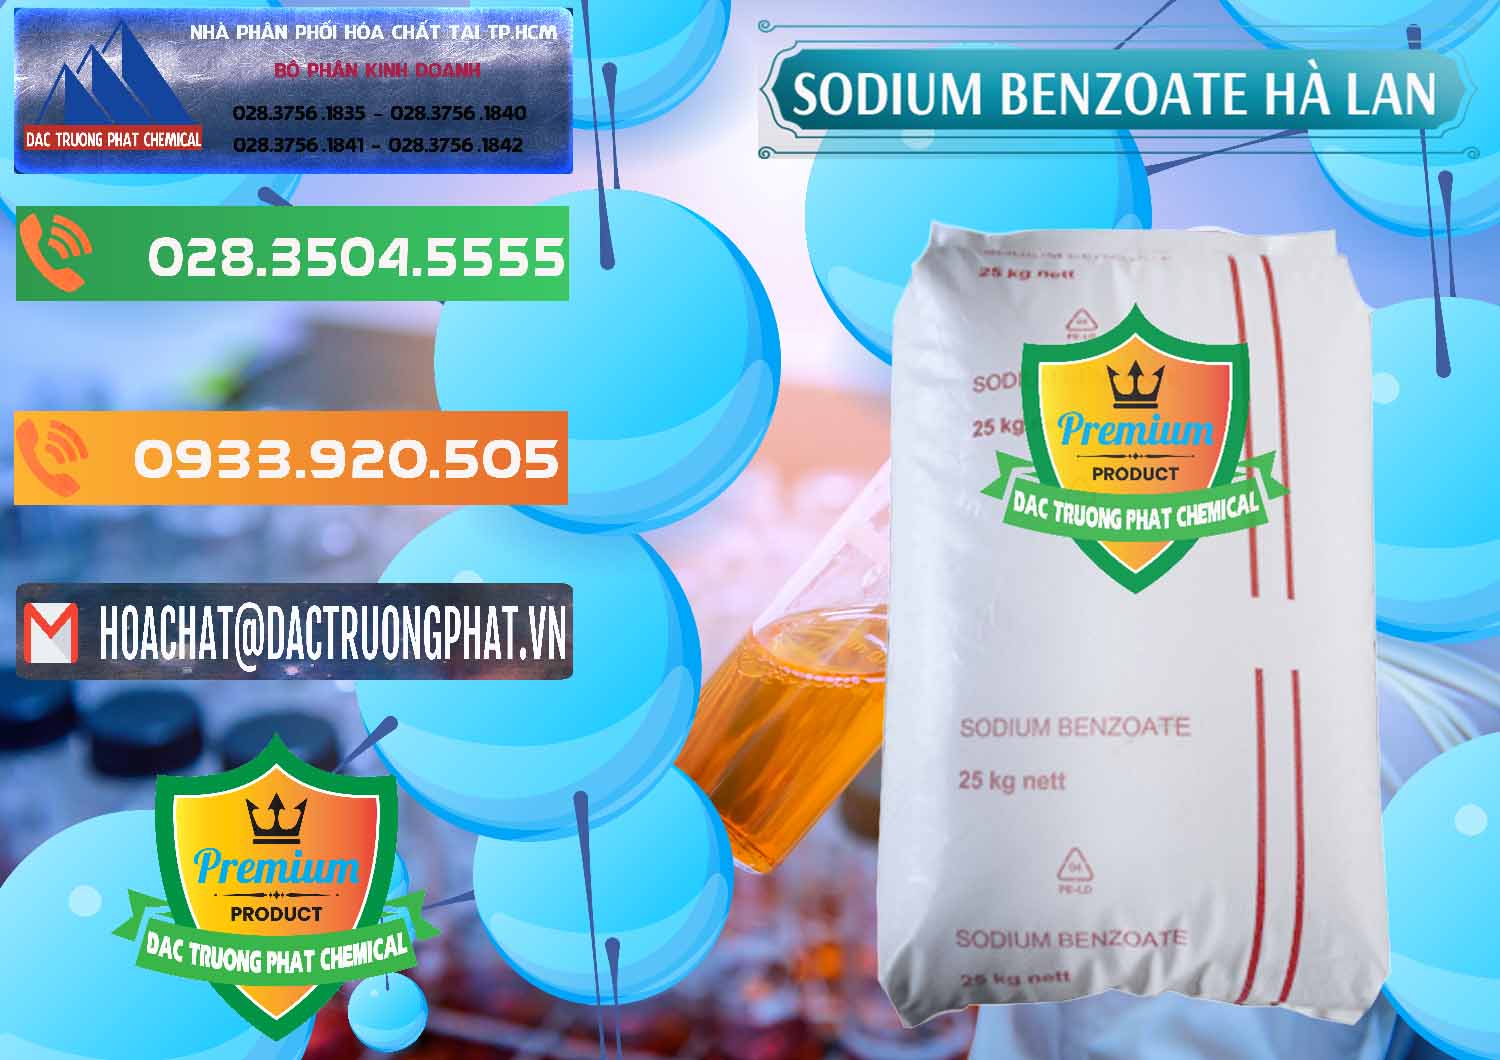 Đơn vị chuyên phân phối ( bán ) Sodium Benzoate - Mốc Bột Chữ Cam Hà Lan Netherlands - 0360 - Nơi chuyên bán _ cung cấp hóa chất tại TP.HCM - hoachatxulynuoc.com.vn